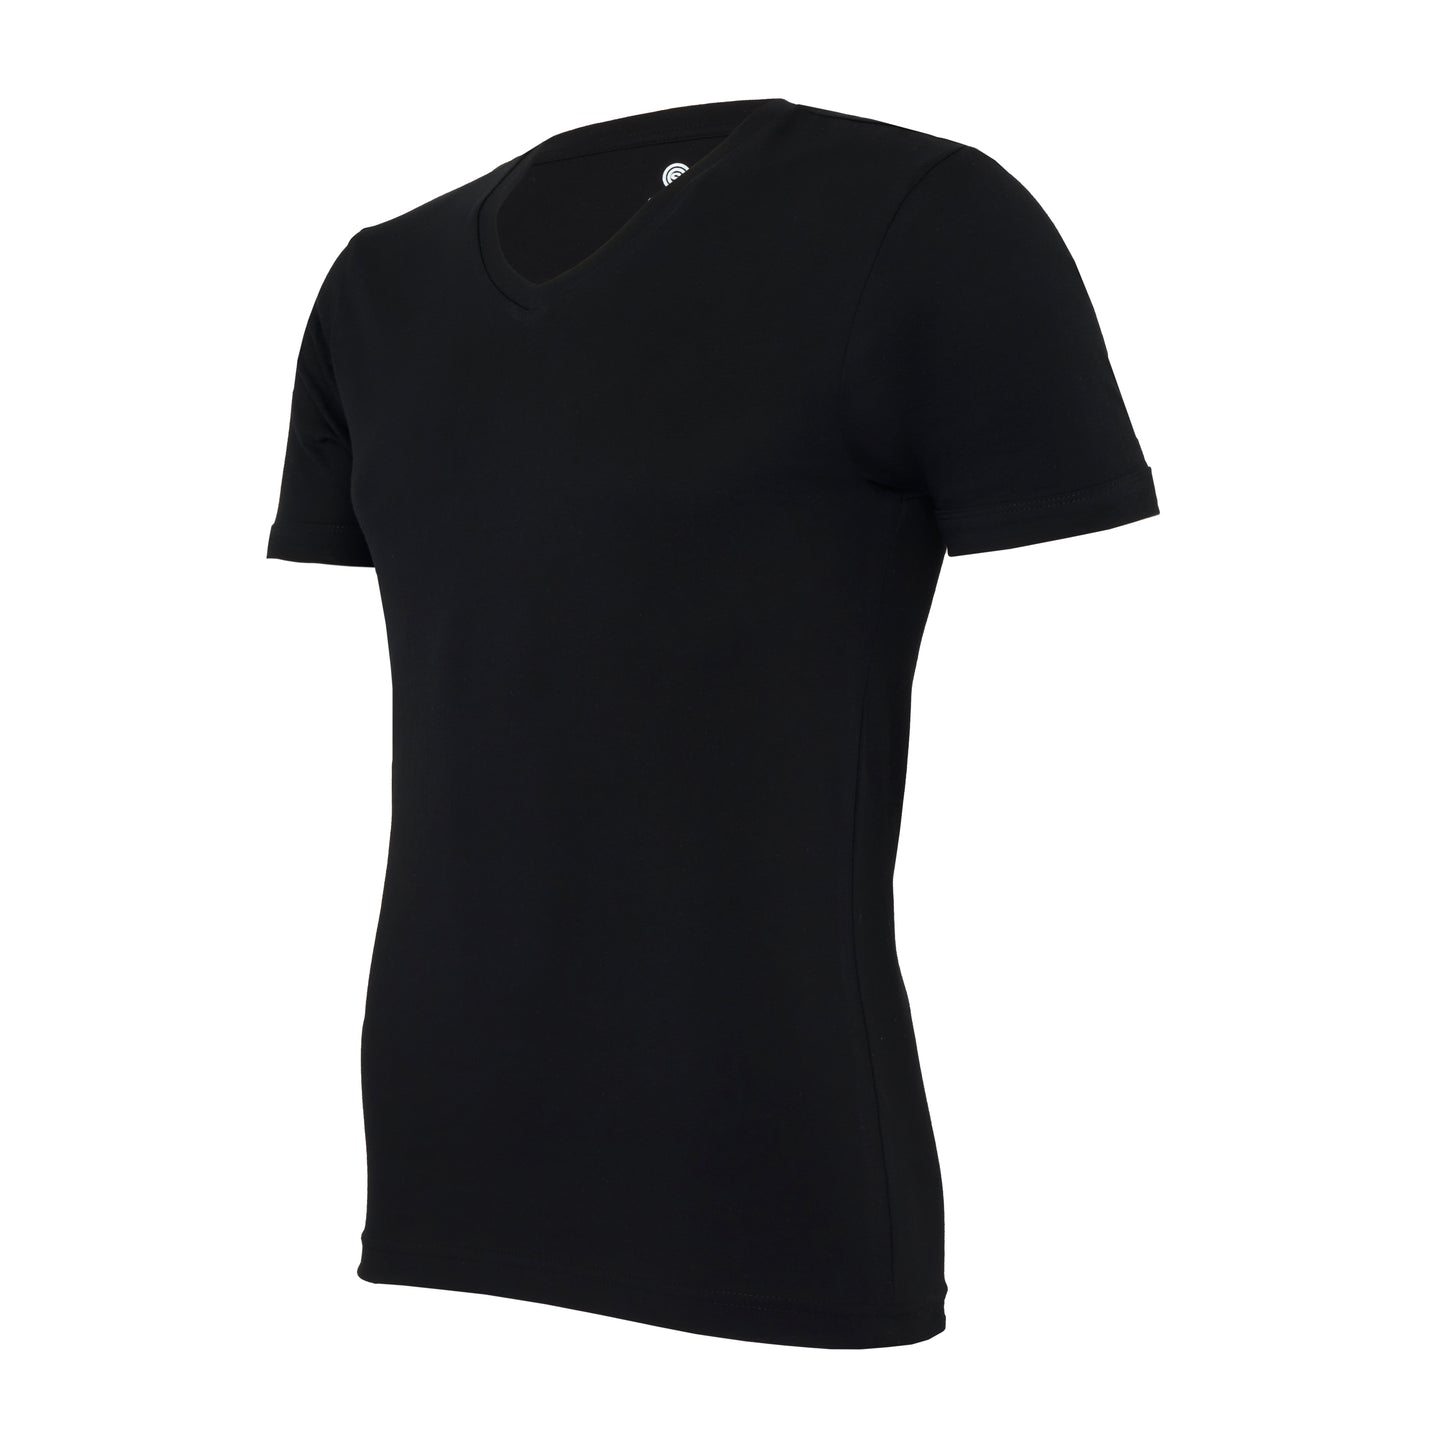 V-neck deep, black, bodyfit T-shirt – pack of 2 or 4 tees